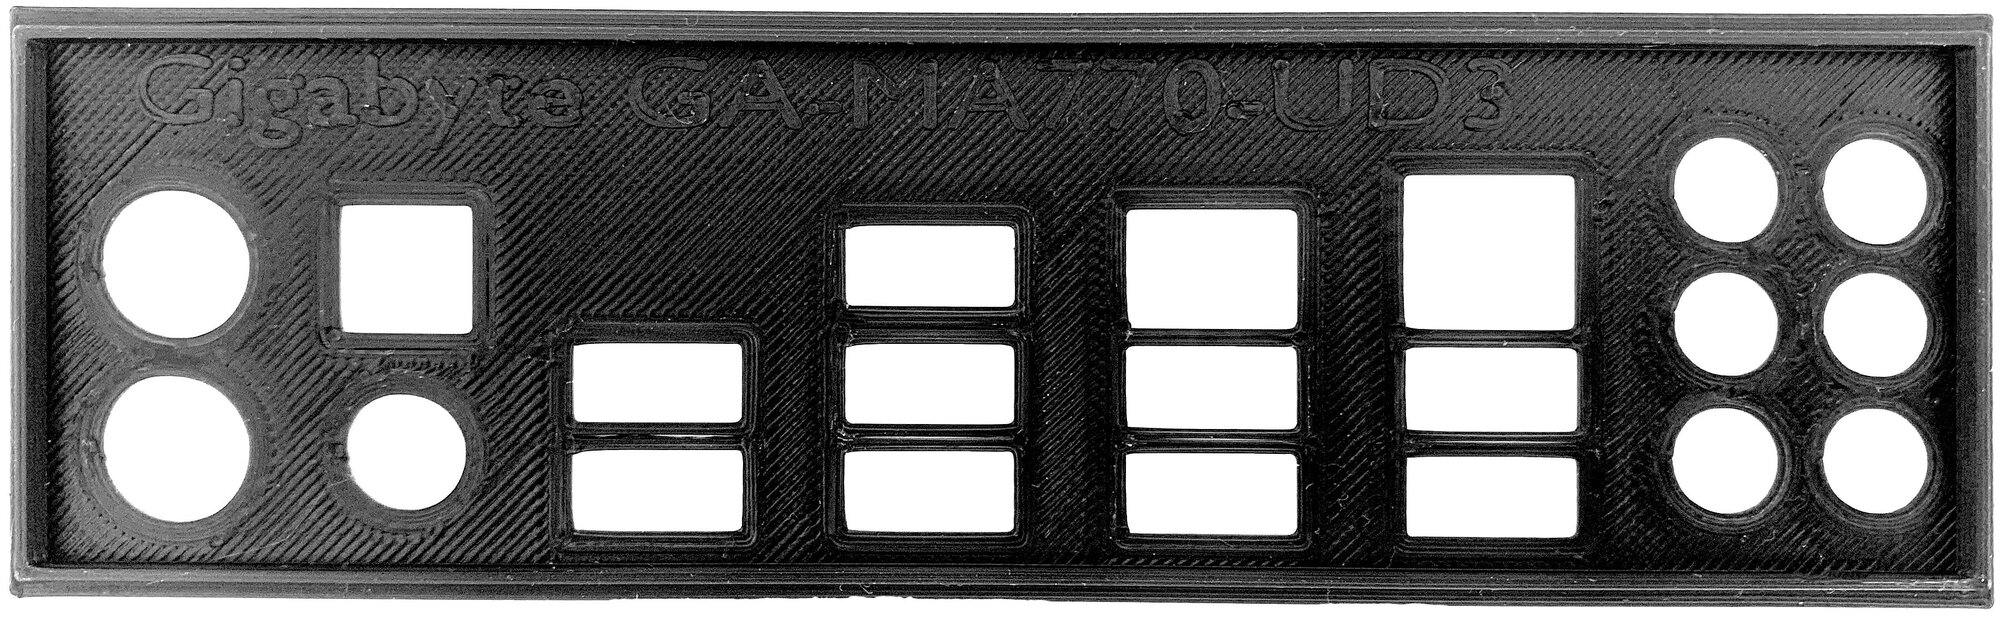 Пылезащитная заглушка задняя панель для материнской платы Gigabyte GA-MA770-UD3 черная